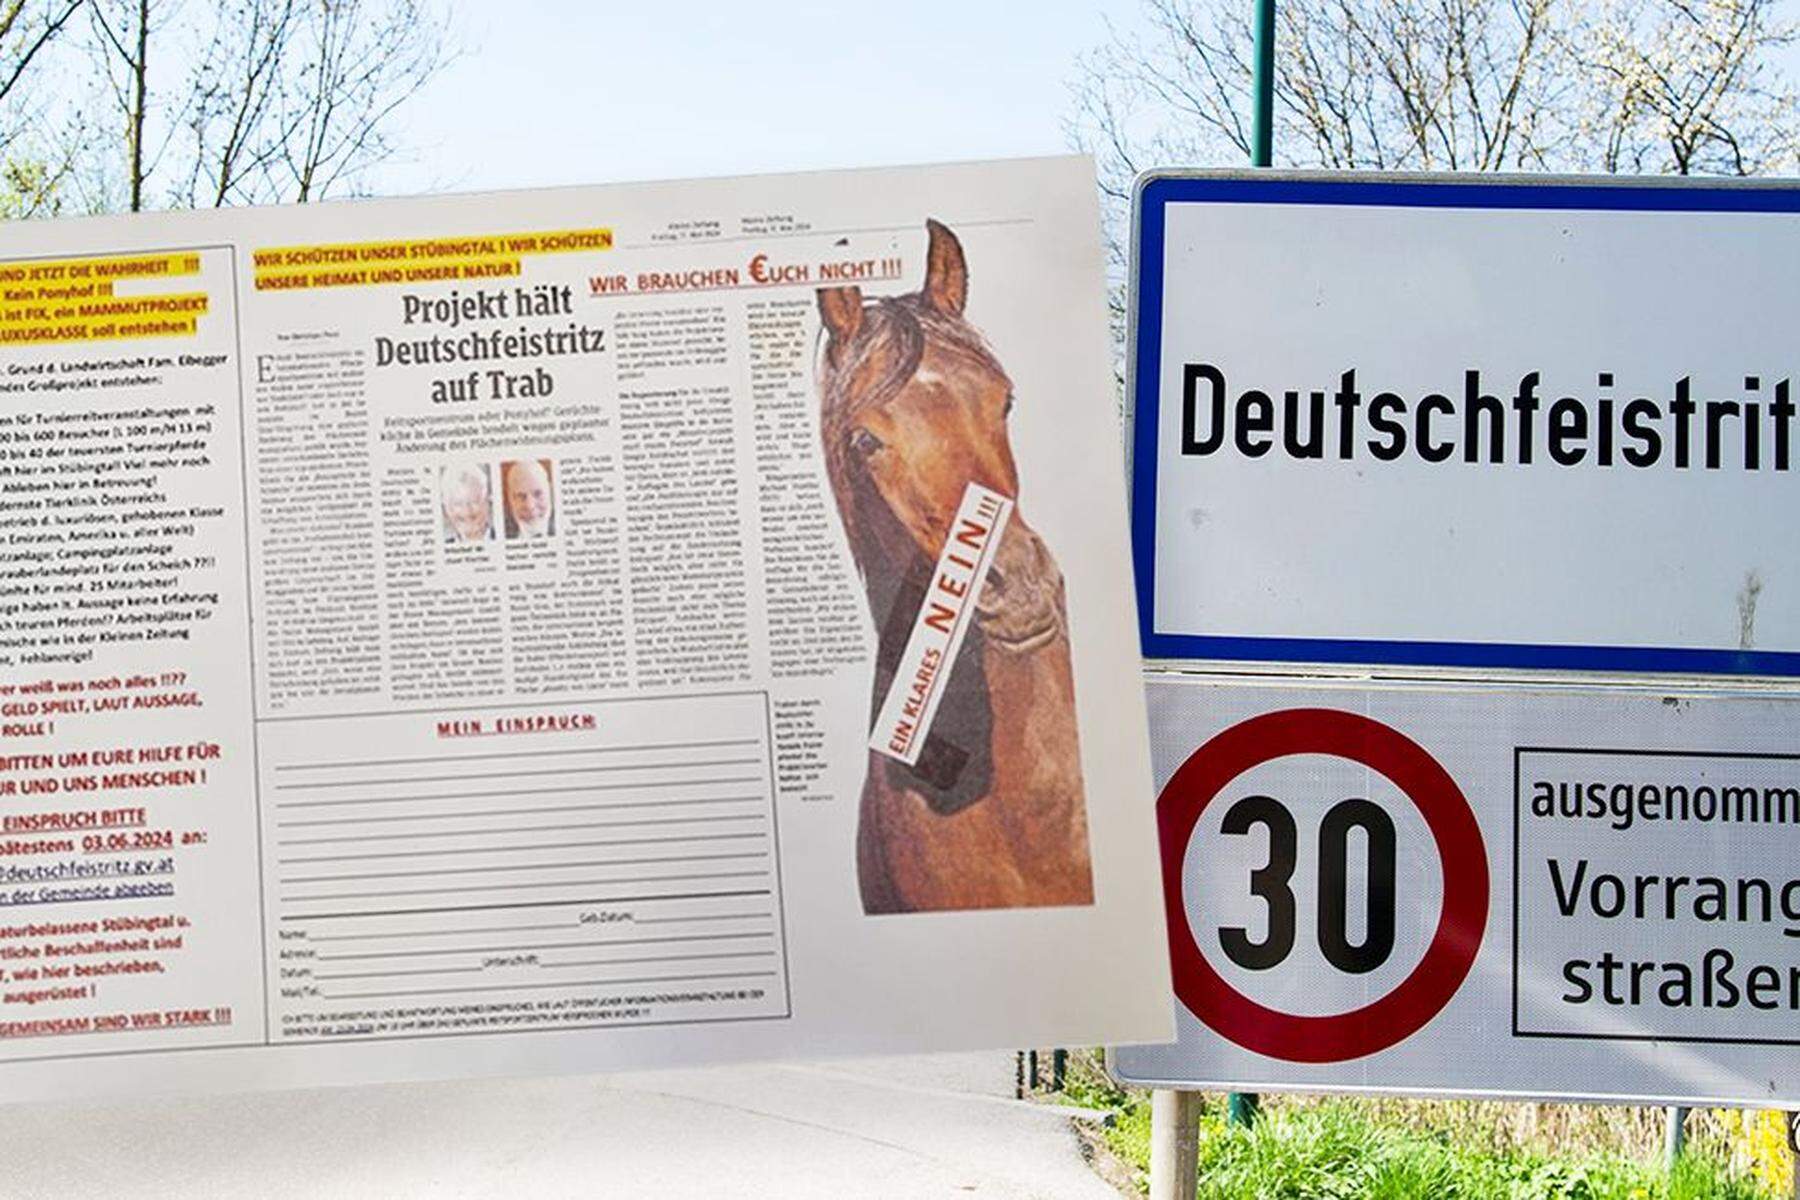 Mammutprojekt statt Ponyhof?: Widerstand gegen hochtrabende Pläne in Deutschfeistritz 